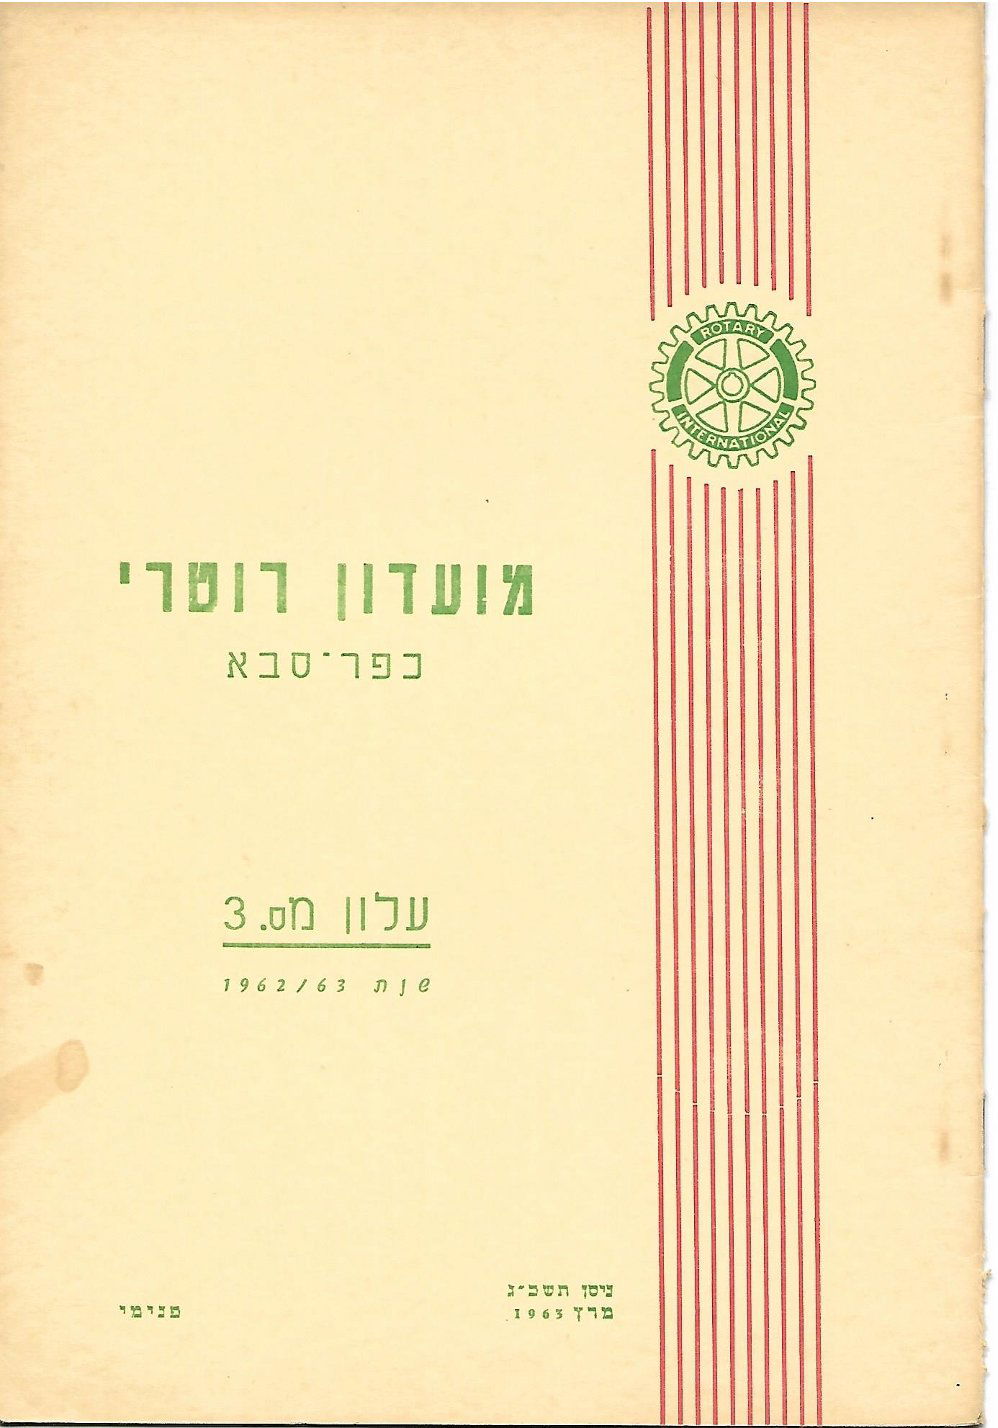 עלון מס' 3 שנת 1962/63 - נשיא ד"ר אלפרד גרינבאום